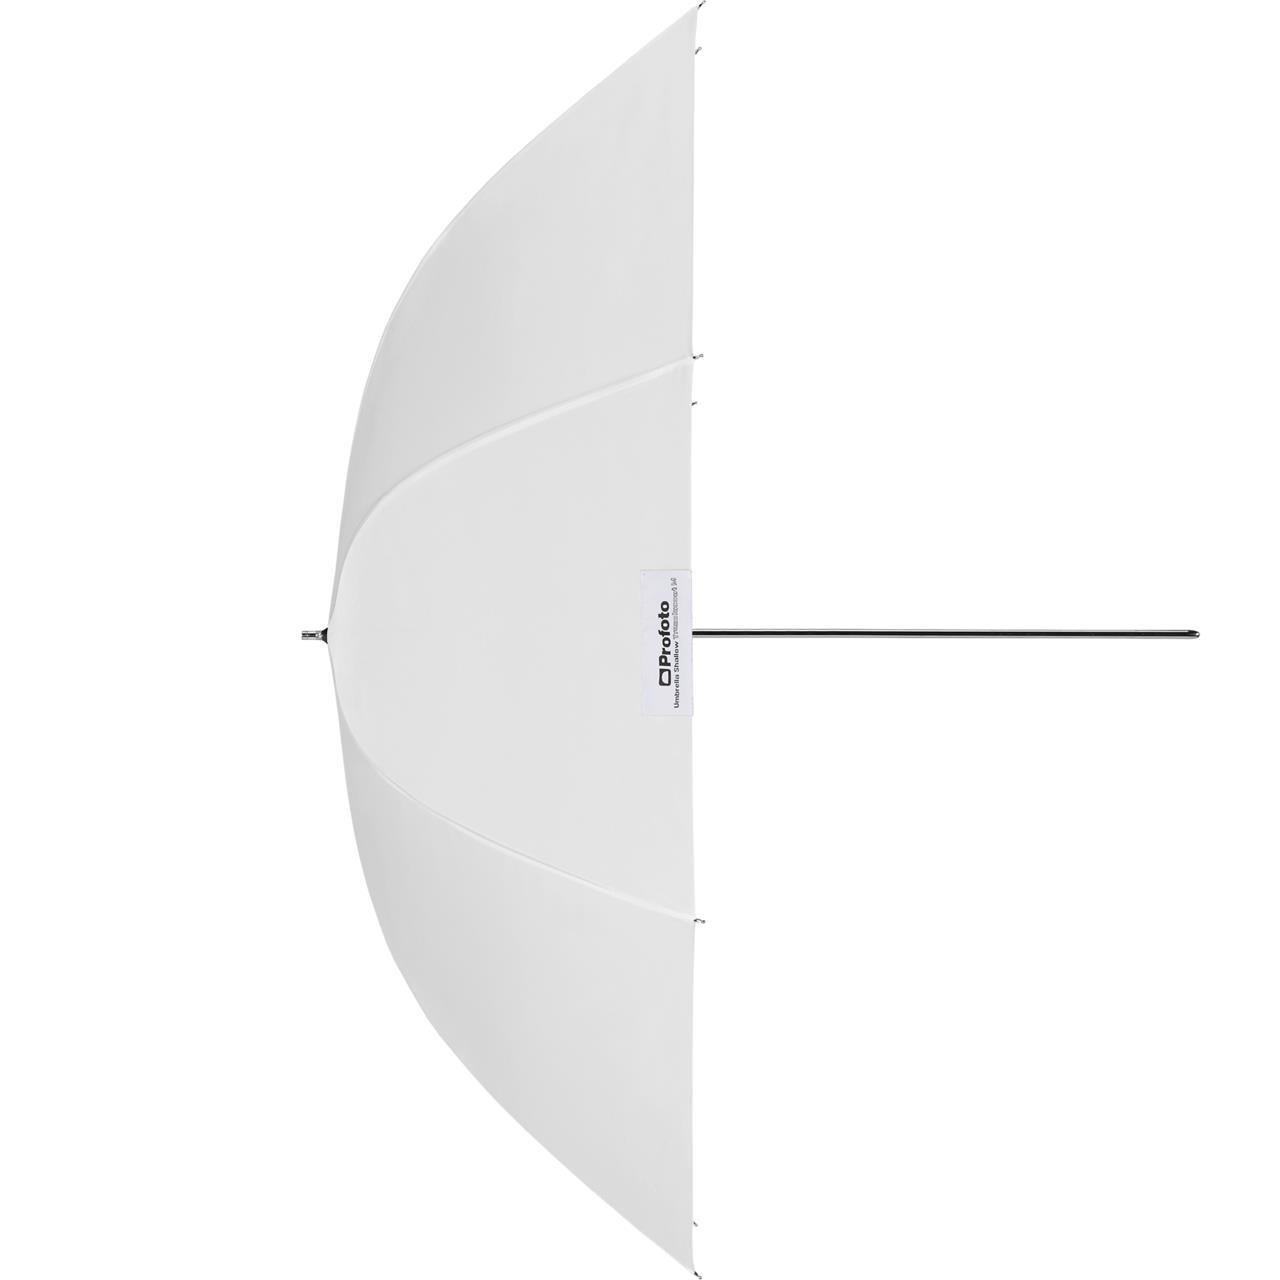 Profoto Umbrella Shallow Translucent M (105cm/41")